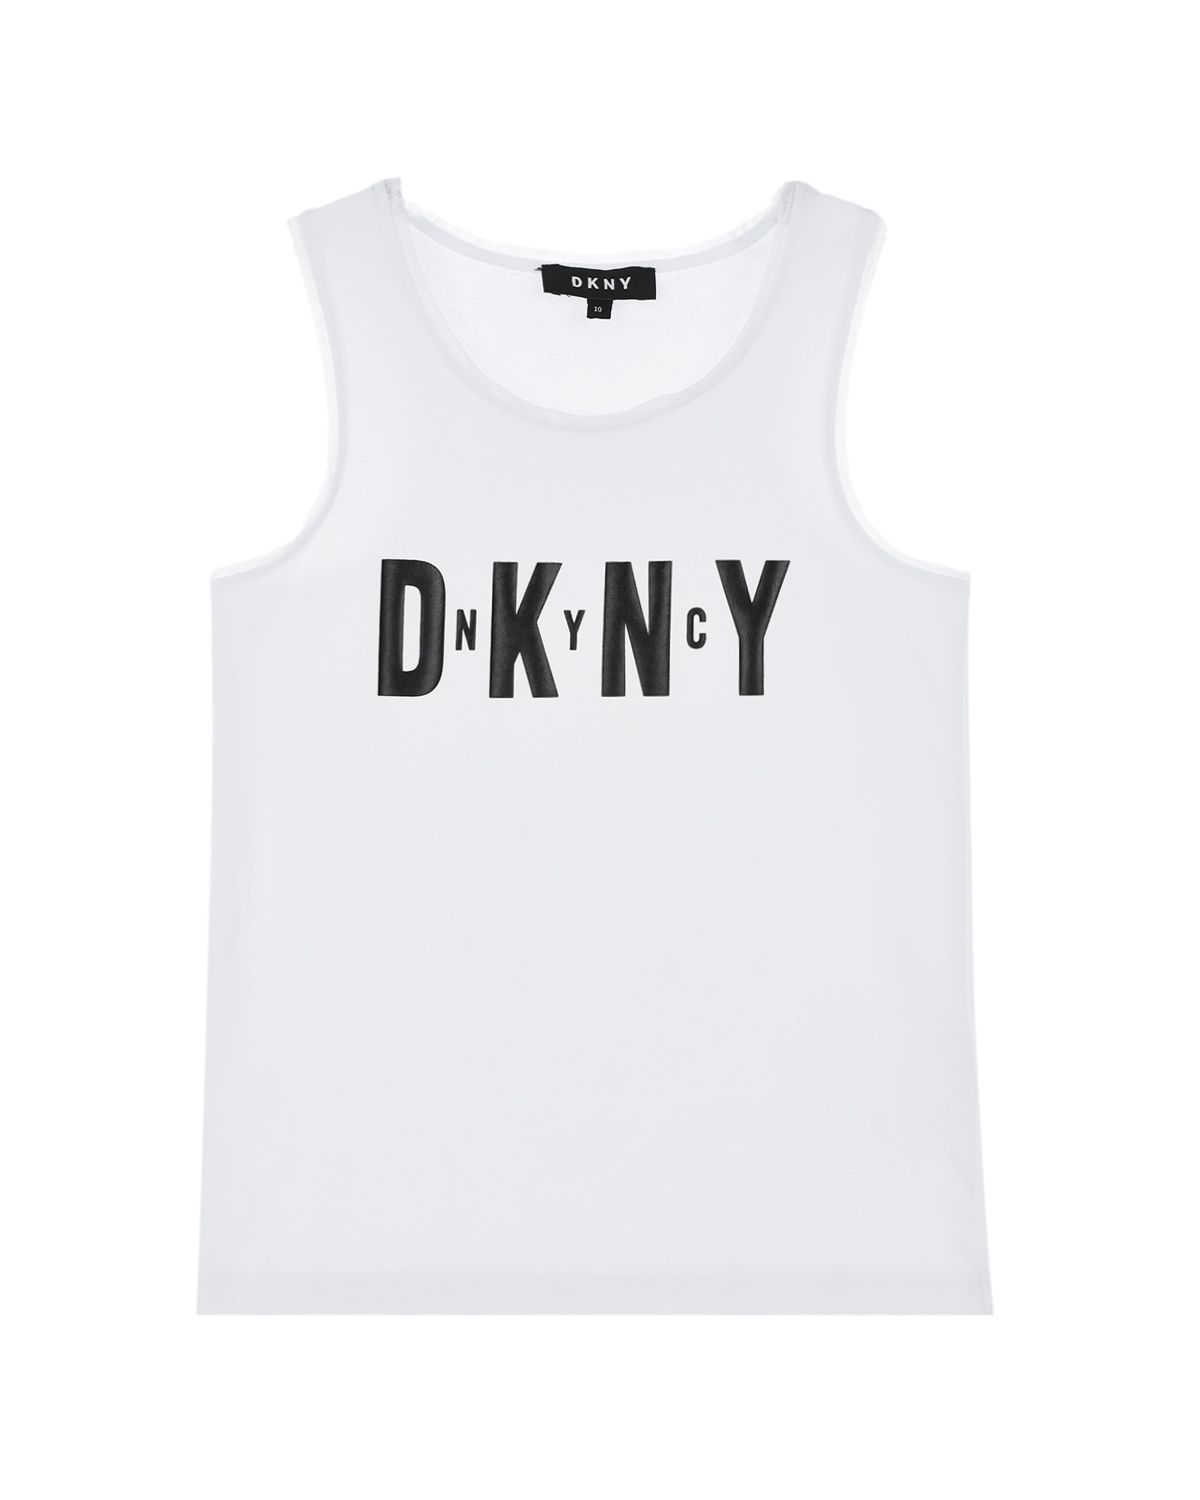 Купить Белая майка с контрастным логотипом DKNY детская, Белый, 95%хлопок+5%эластан, 92%полиэстер+8%эластан